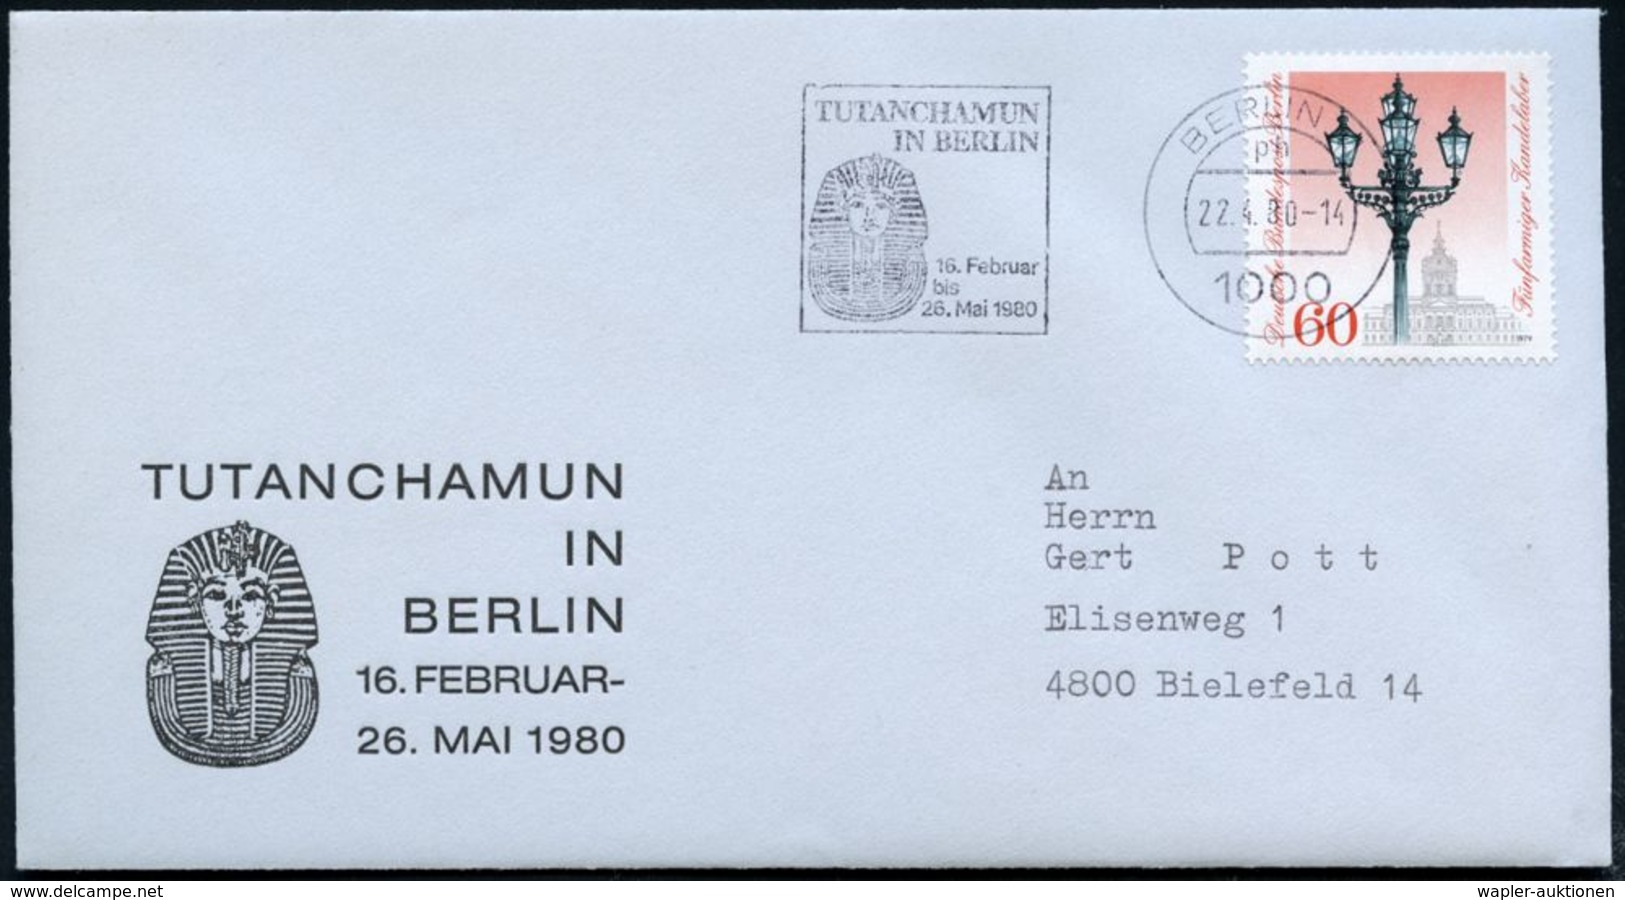 1000 BERLIN 11/ Ph #bzw.# 19/ TUTANCHAMUN/ IN/ BERLIN.. 1980 (22.4./25.4.) MWSt  U N D  AFS Motivgleich = Je Gold-Totenm - Egyptologie